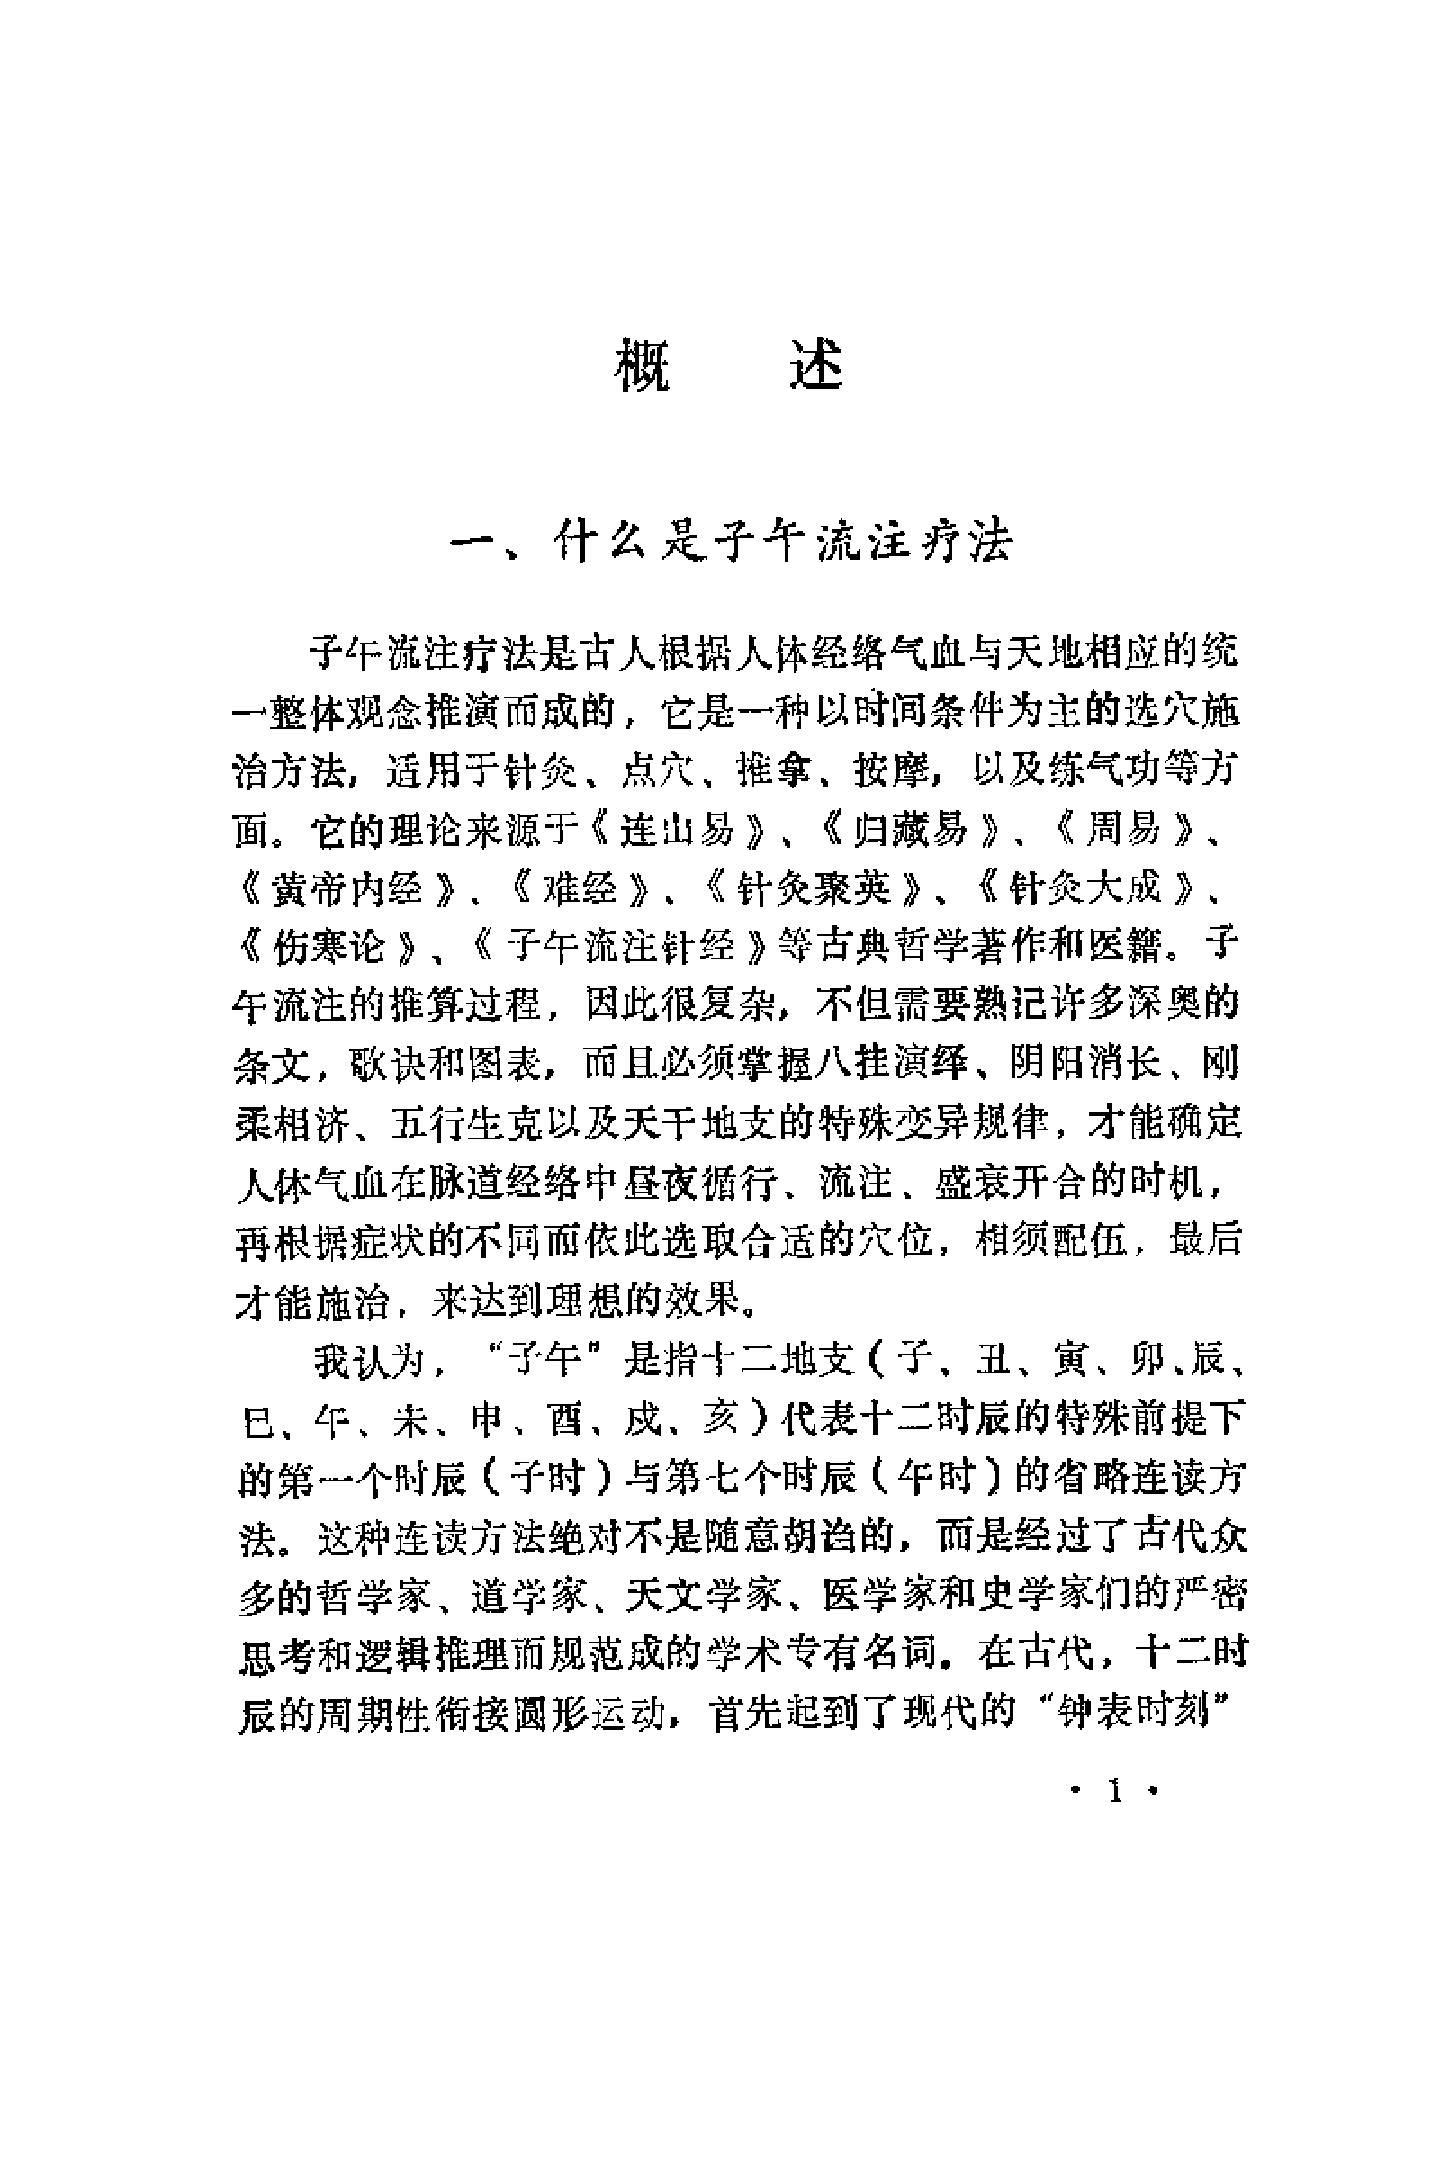 快速子午流注针灸疗法（罗振宇）.pdf(4.04MB_262页)